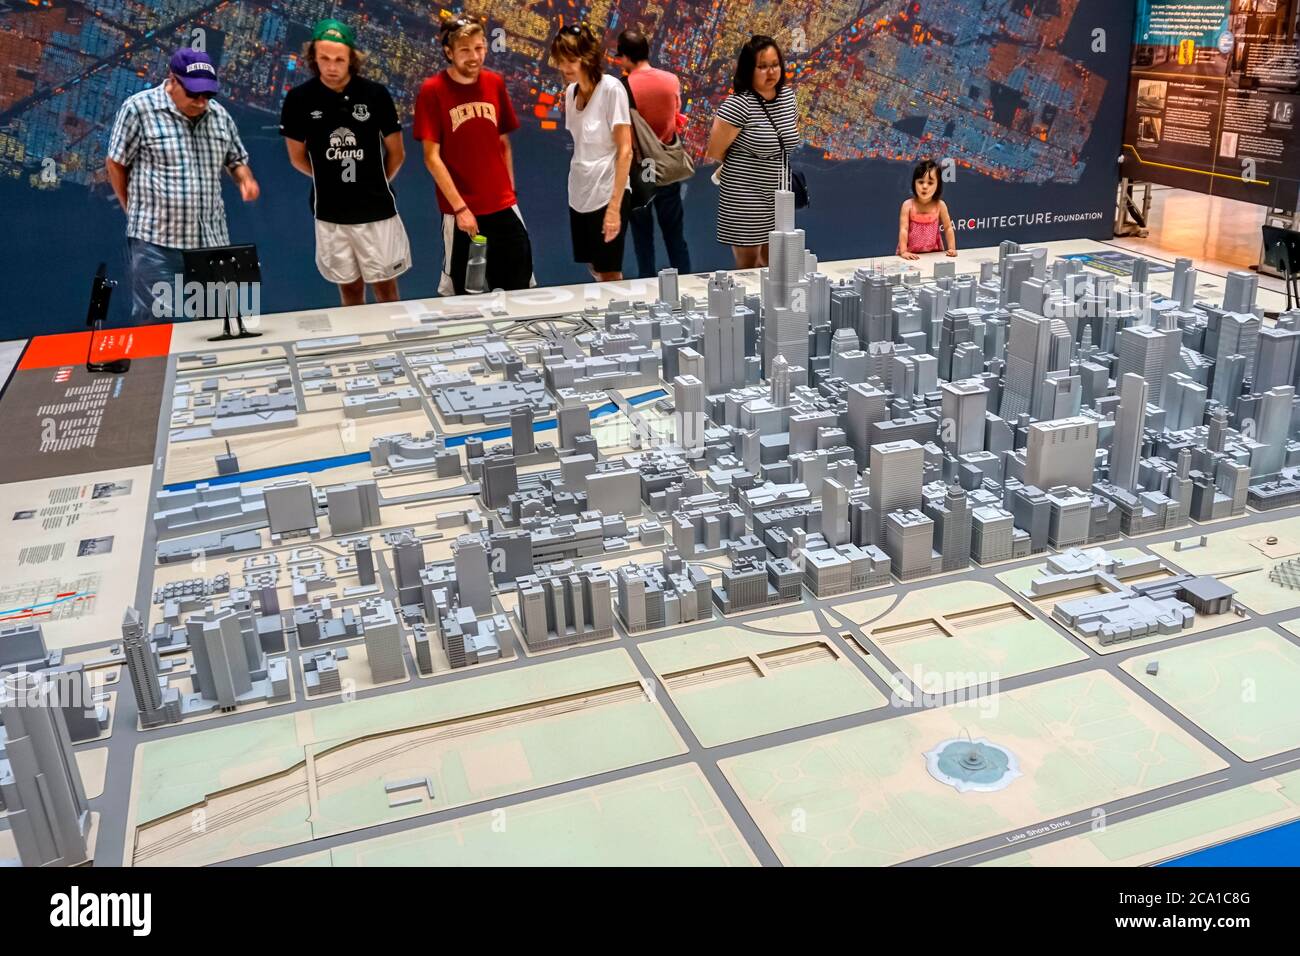 Les visiteurs peuvent admirer le modèle architectural à l'échelle de Chicago lors de l'expérience Chicago City Model Experience au Chicago Architecture Center. Banque D'Images